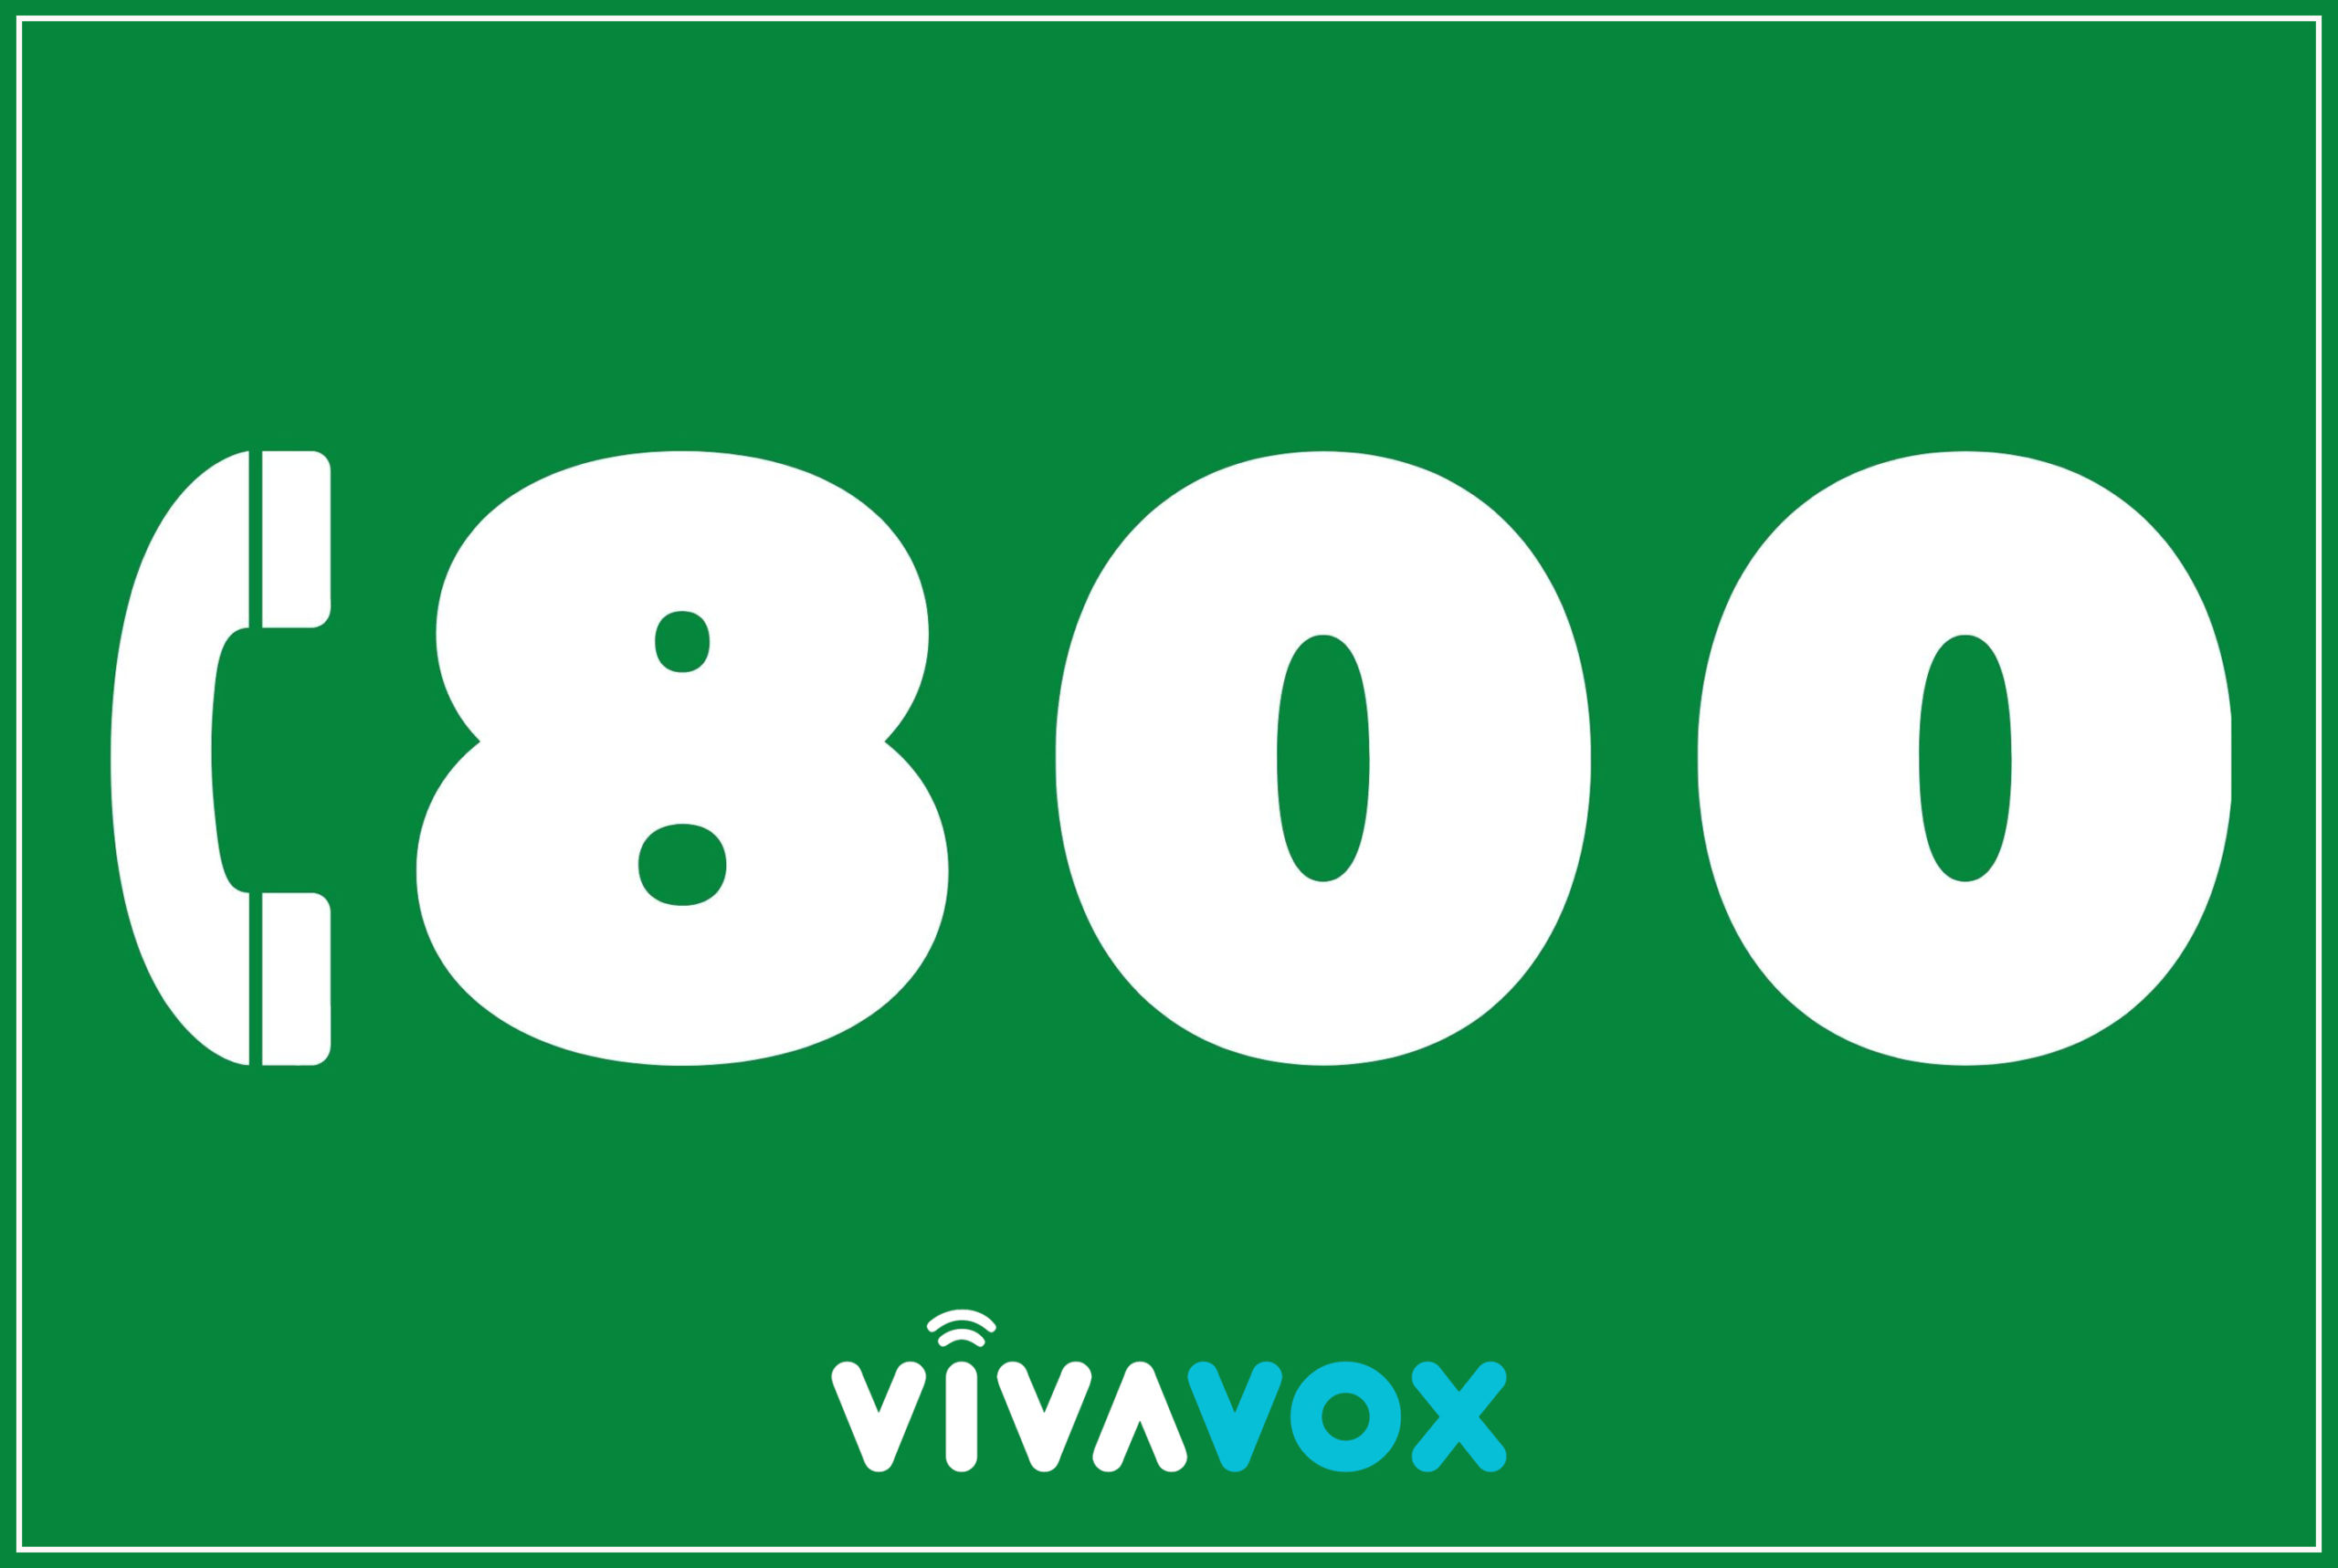 Numero Verde gratuito e facile da ricordare: scegli VivaVox!